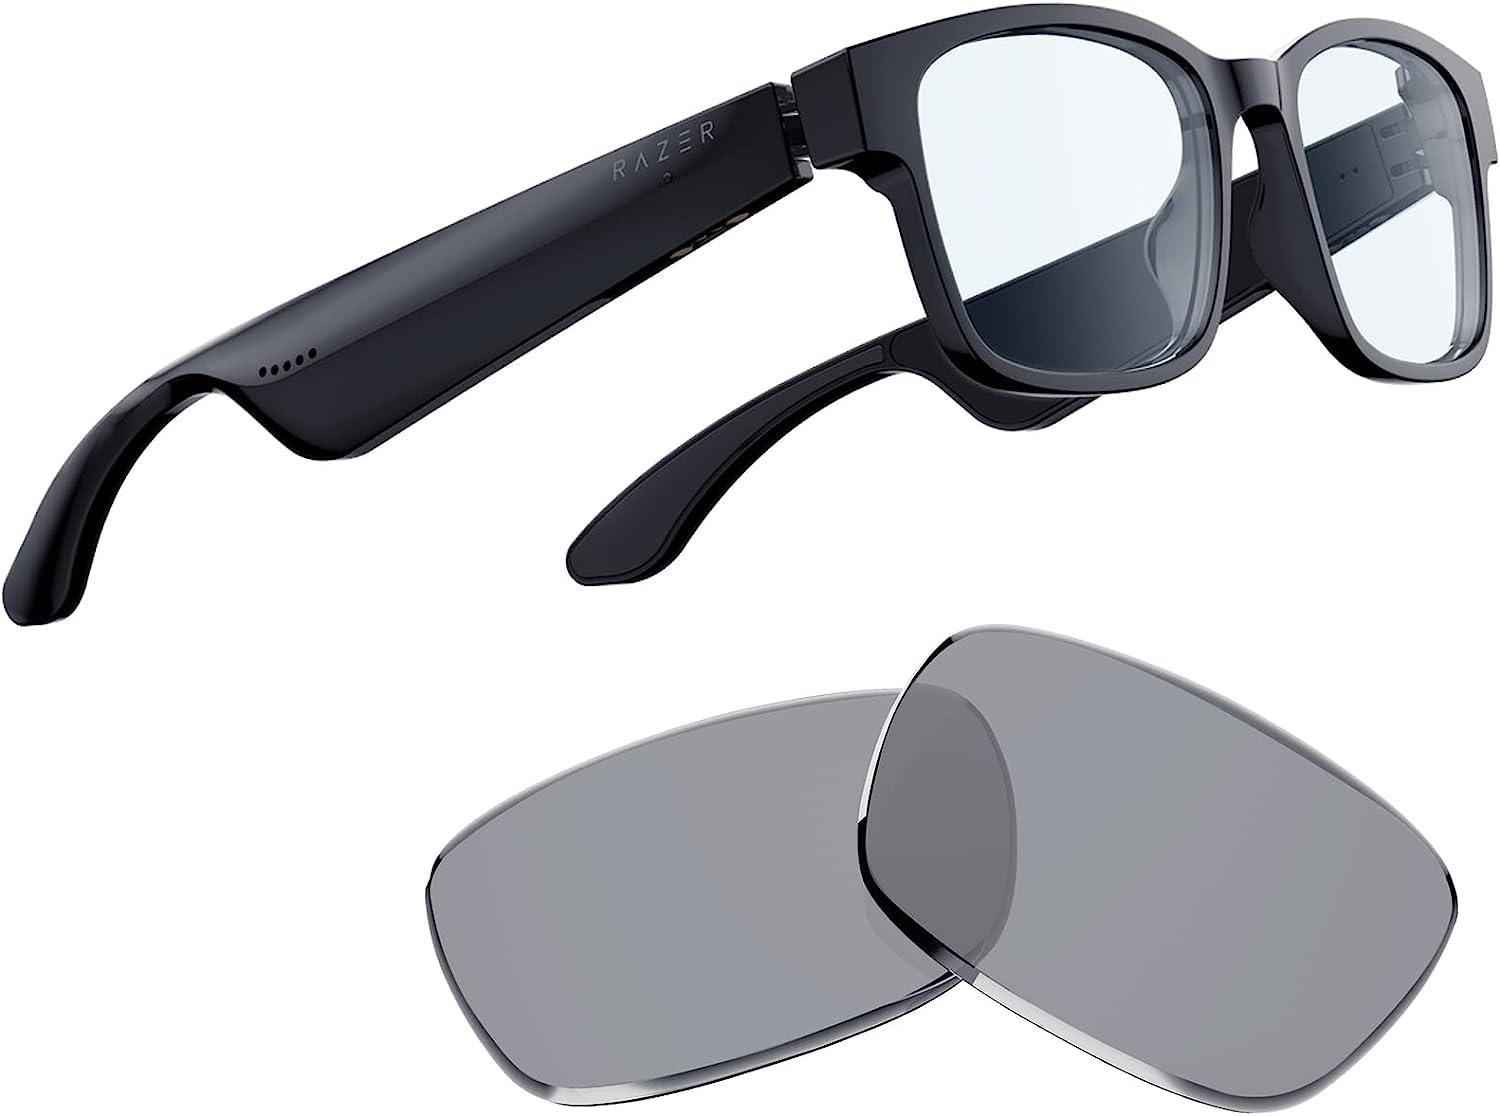 Razer Anzu Blue Light Filtering Smart Glasses for $44.49 Shipped